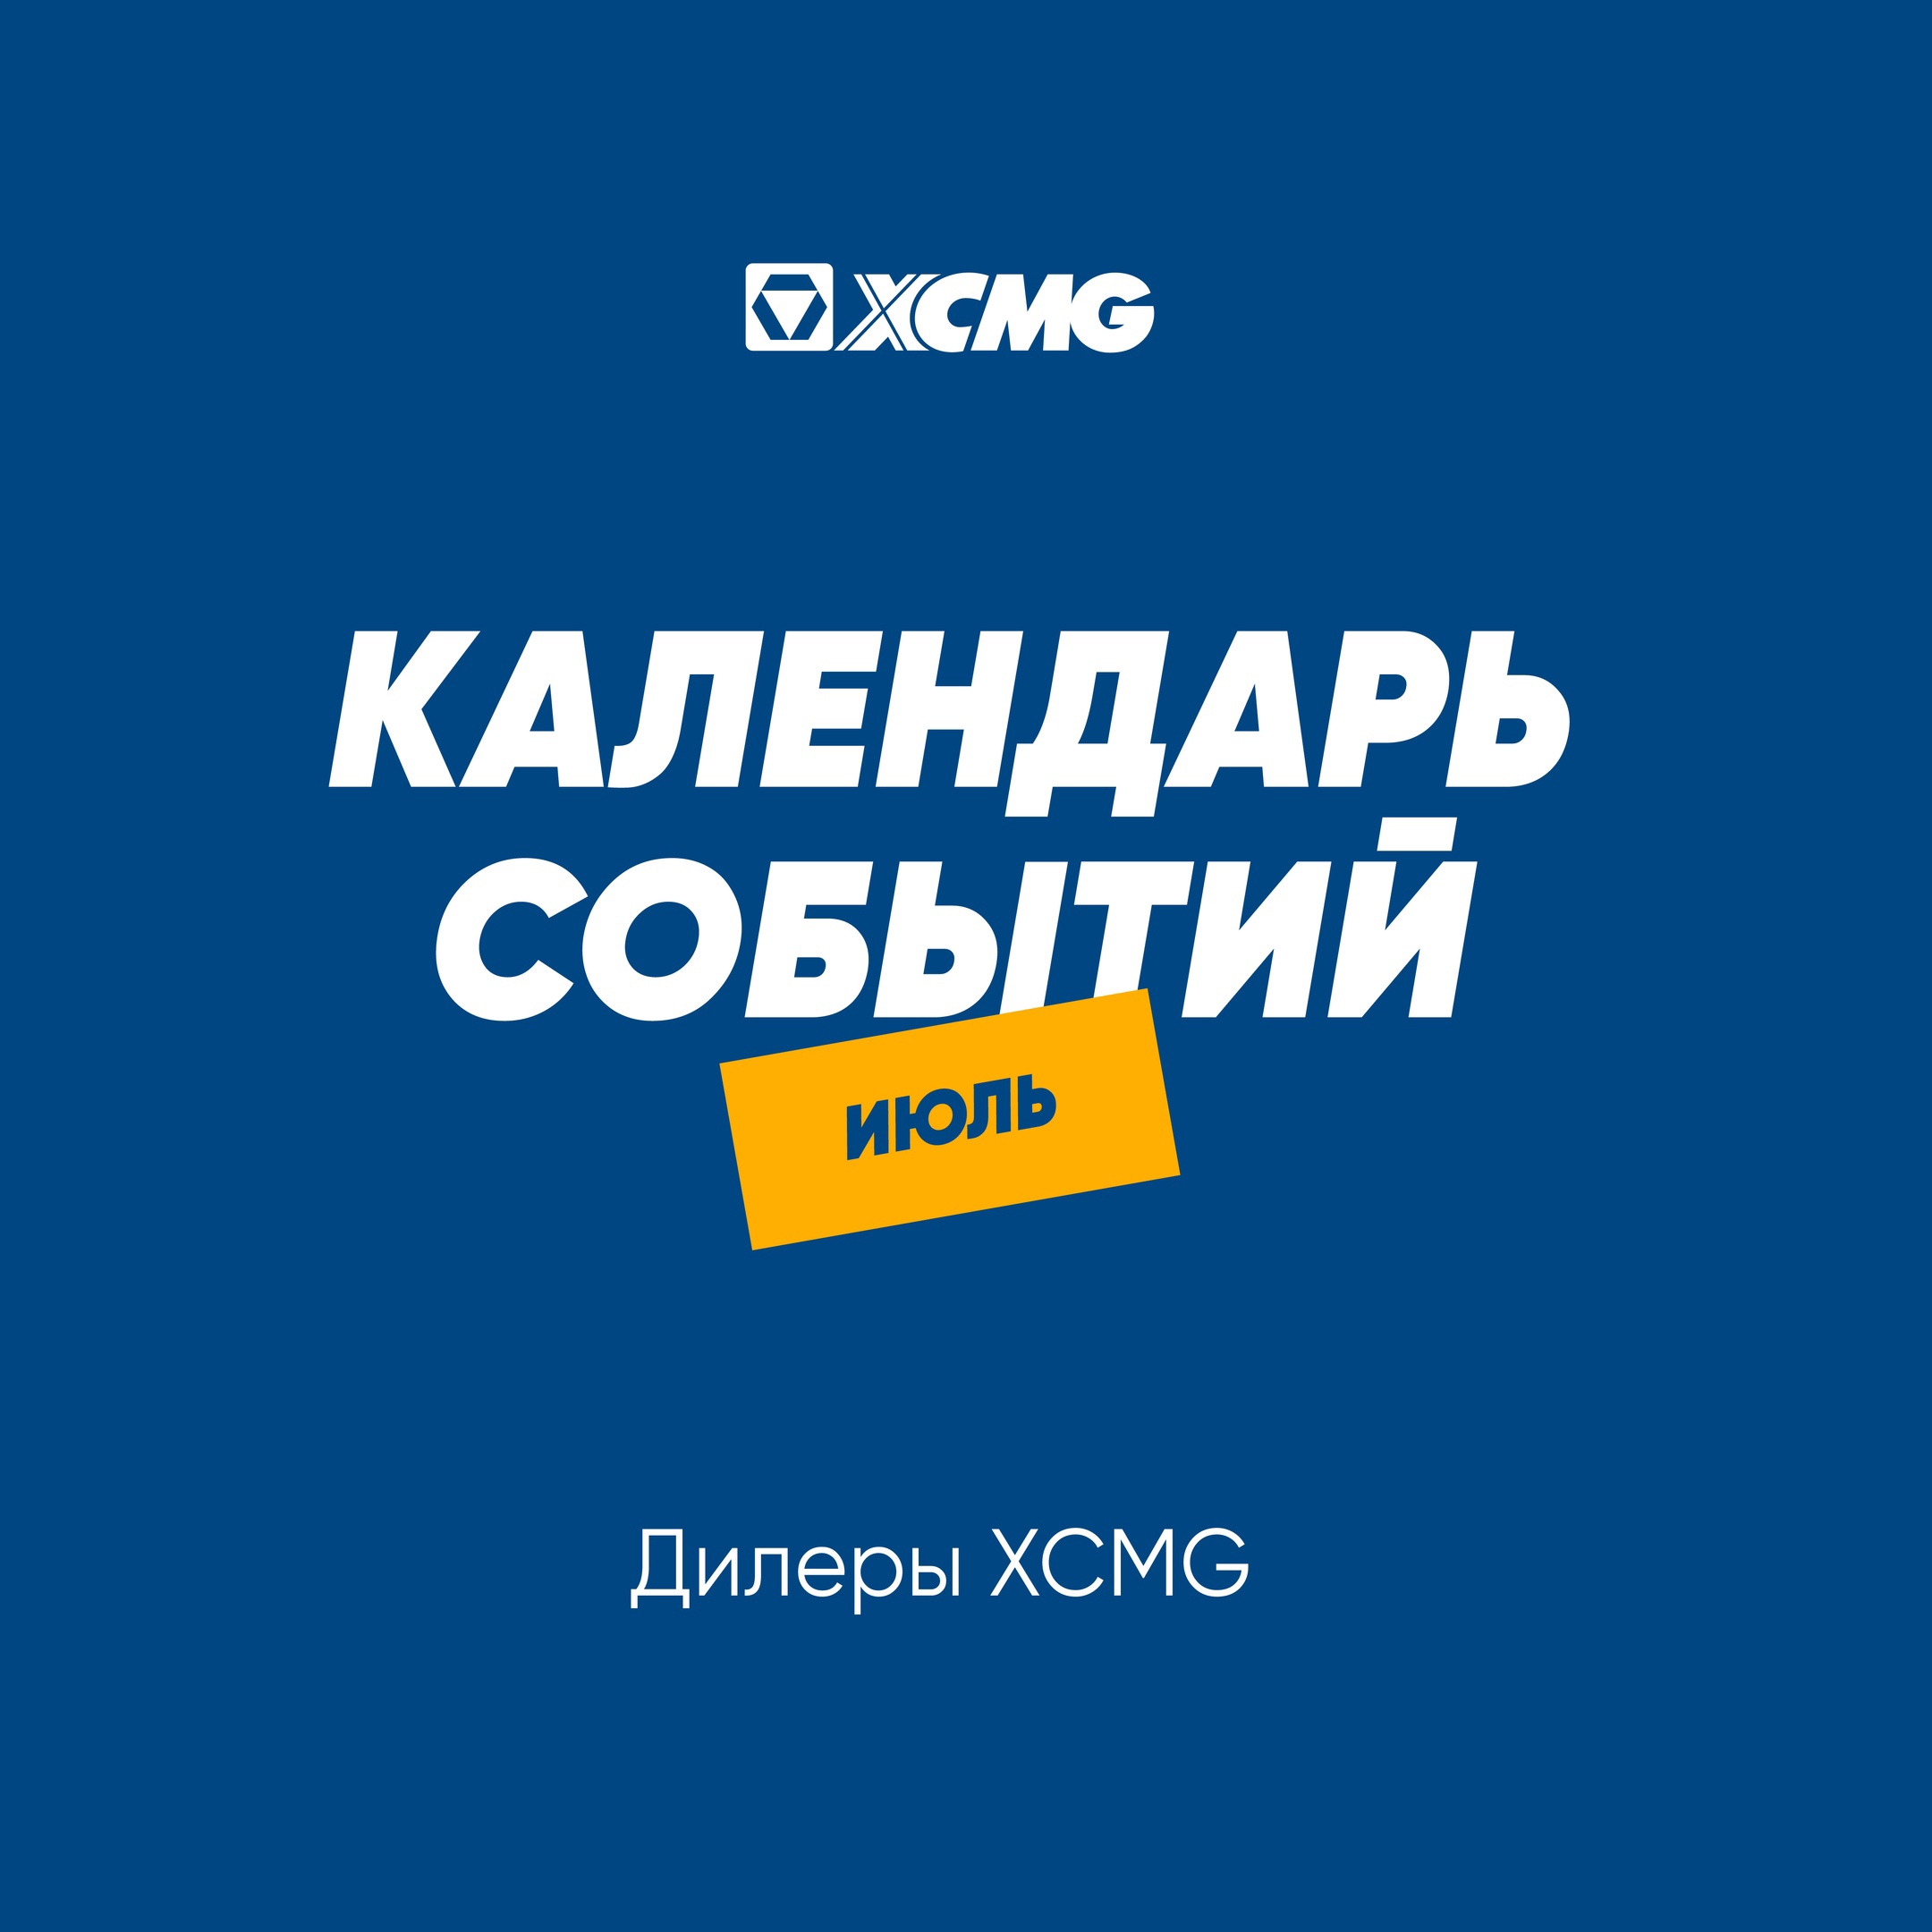 XCMG на Агропромышленных выставках в России - картинка календаря событий